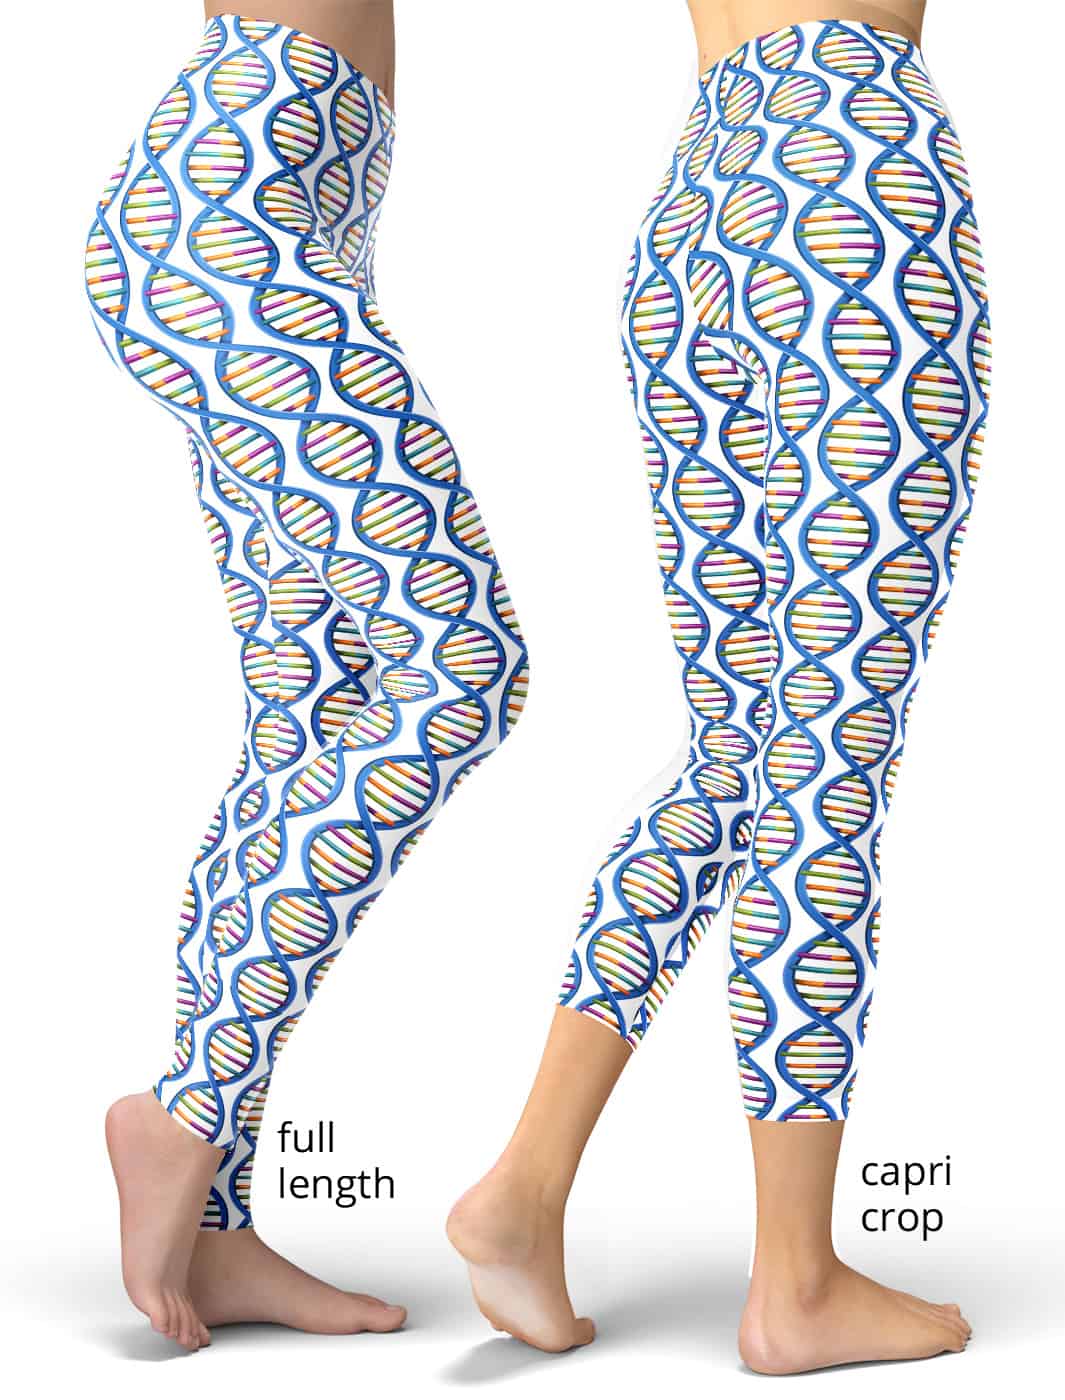 https://squeakychimp.com/wp-content/uploads/2019/01/science-biology-chemistry-chromosome-gene-dna-leggings-women-1065x1400.jpg